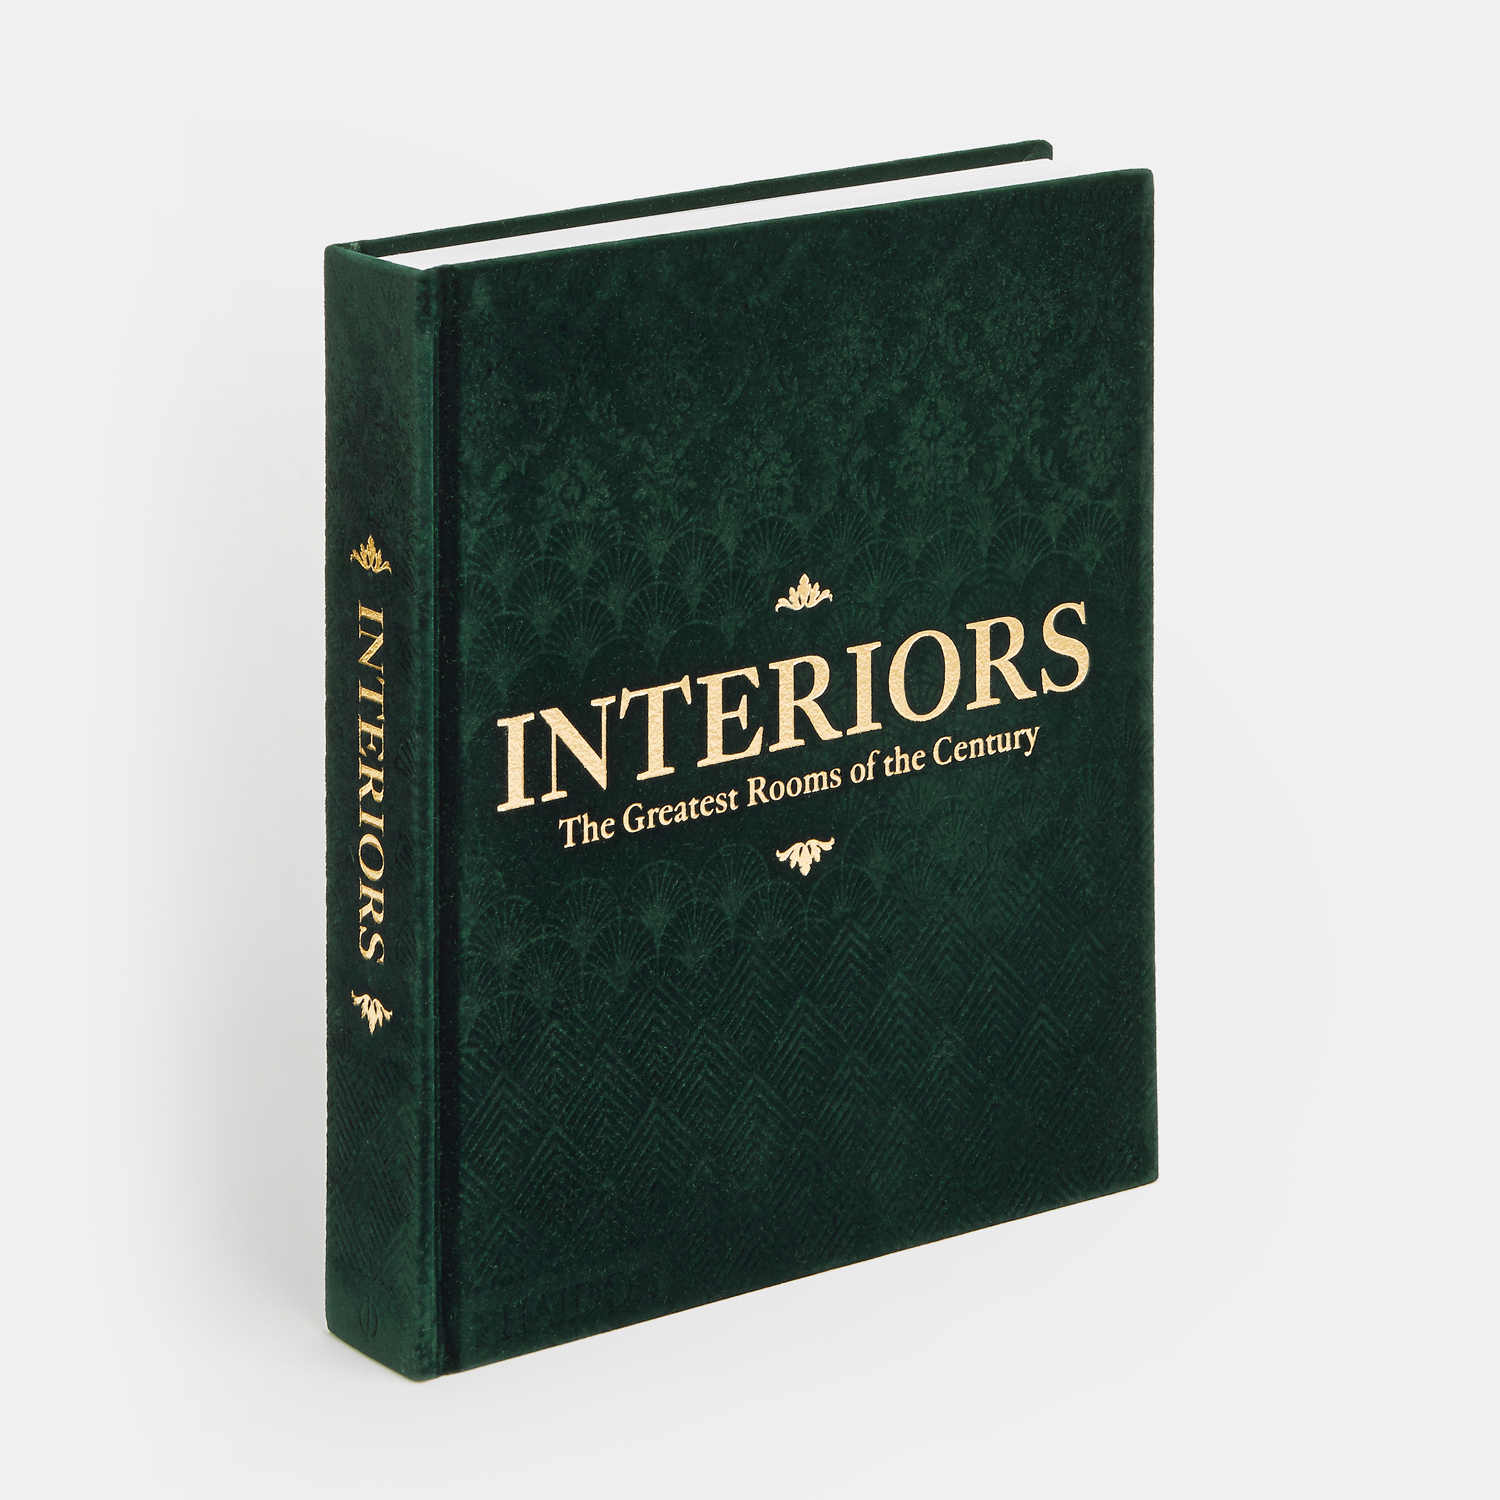 Interiors, the new green velvet edition